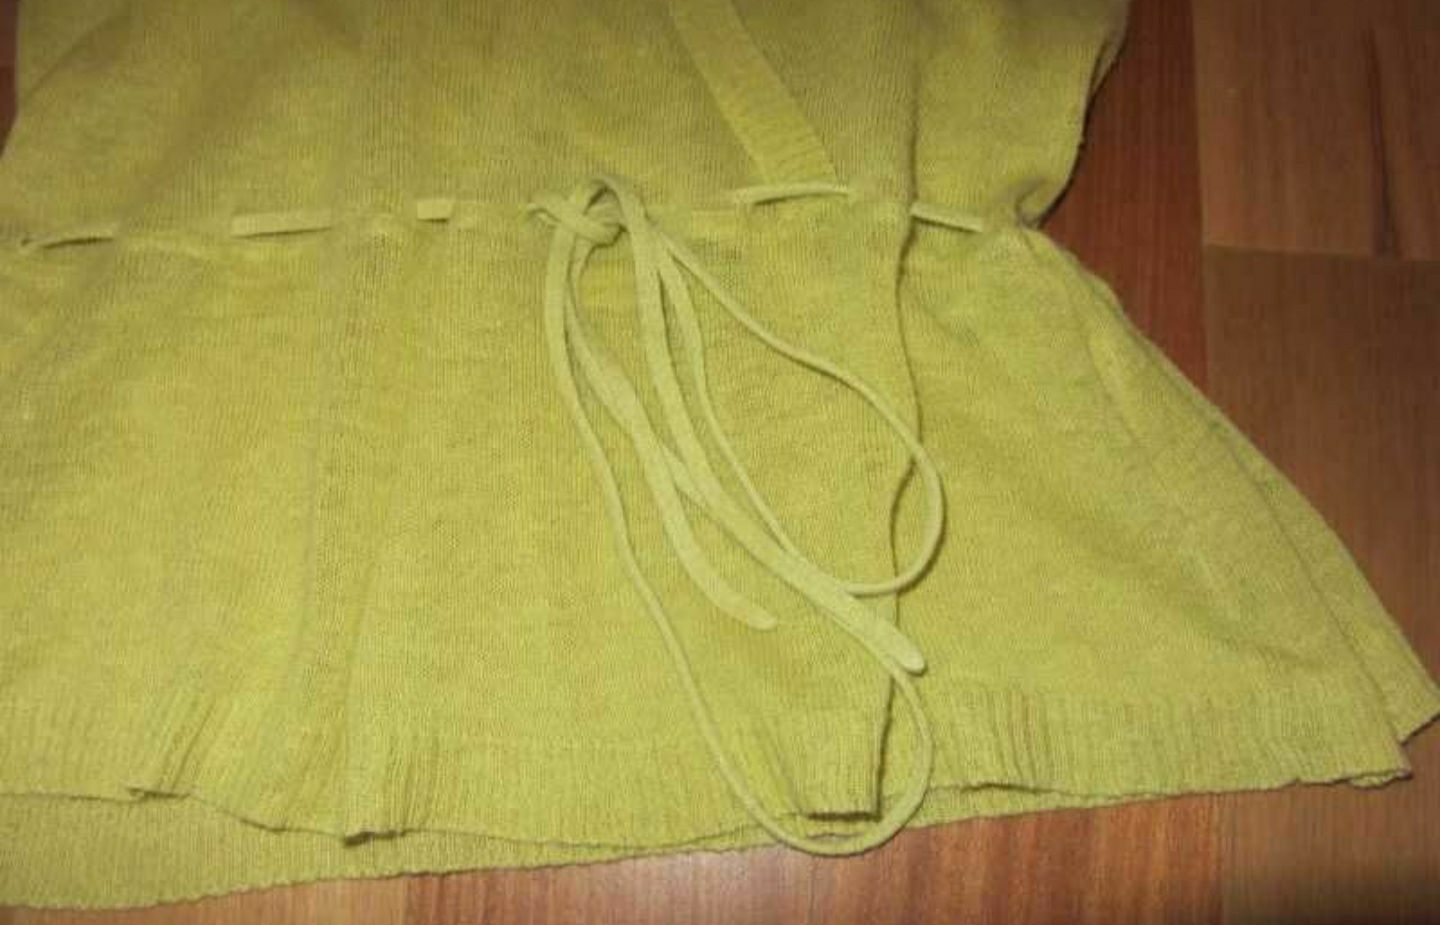 NowOn woman lekka dzianinowa bluzka, tunika, oliwkowa, r. S, 36